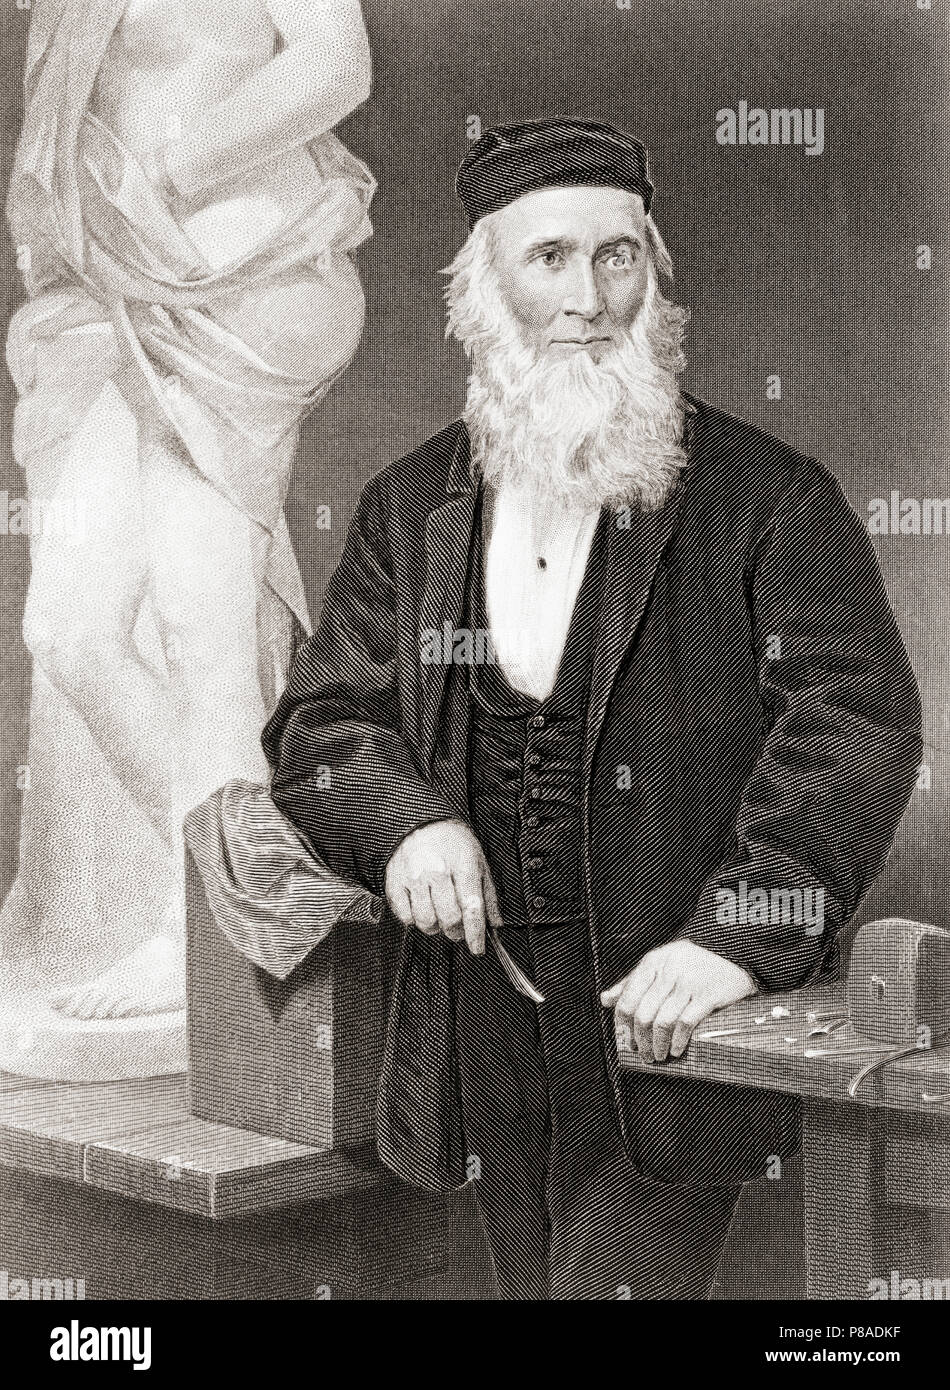 Hiram Befugnisse, 1805-1873. Amerikanische neoklassizistischen Bildhauers. Nach einer Arbeit von Alonzo Chappel. Stockfoto